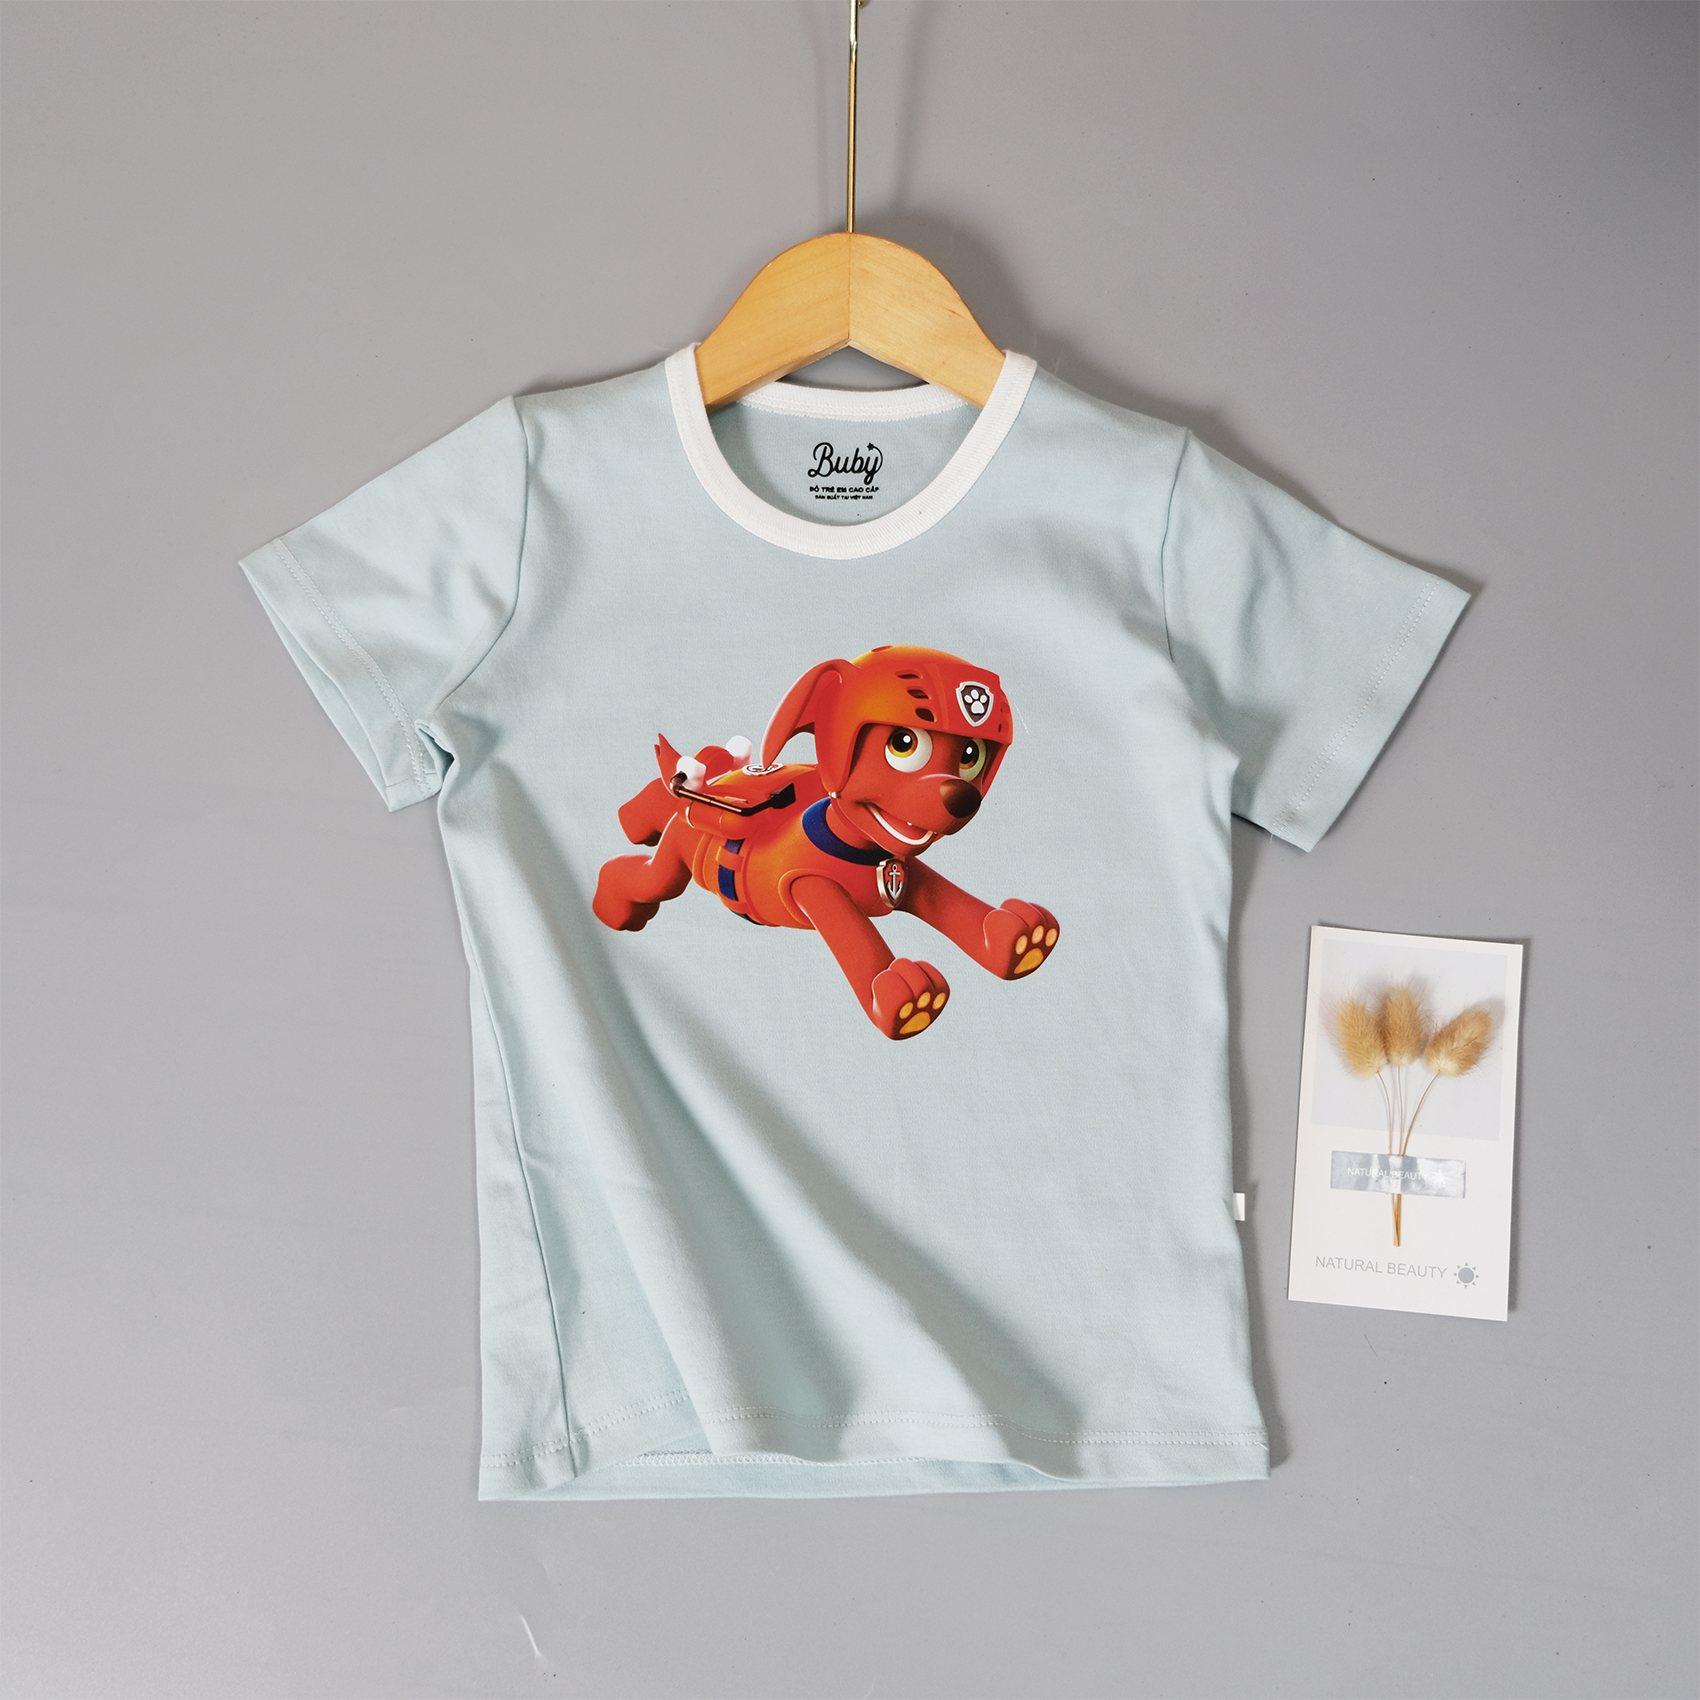 Áo phông trẻ em, In chú chó cứu hộ dễ thương, Chất vải cotton 100% (7-23kg